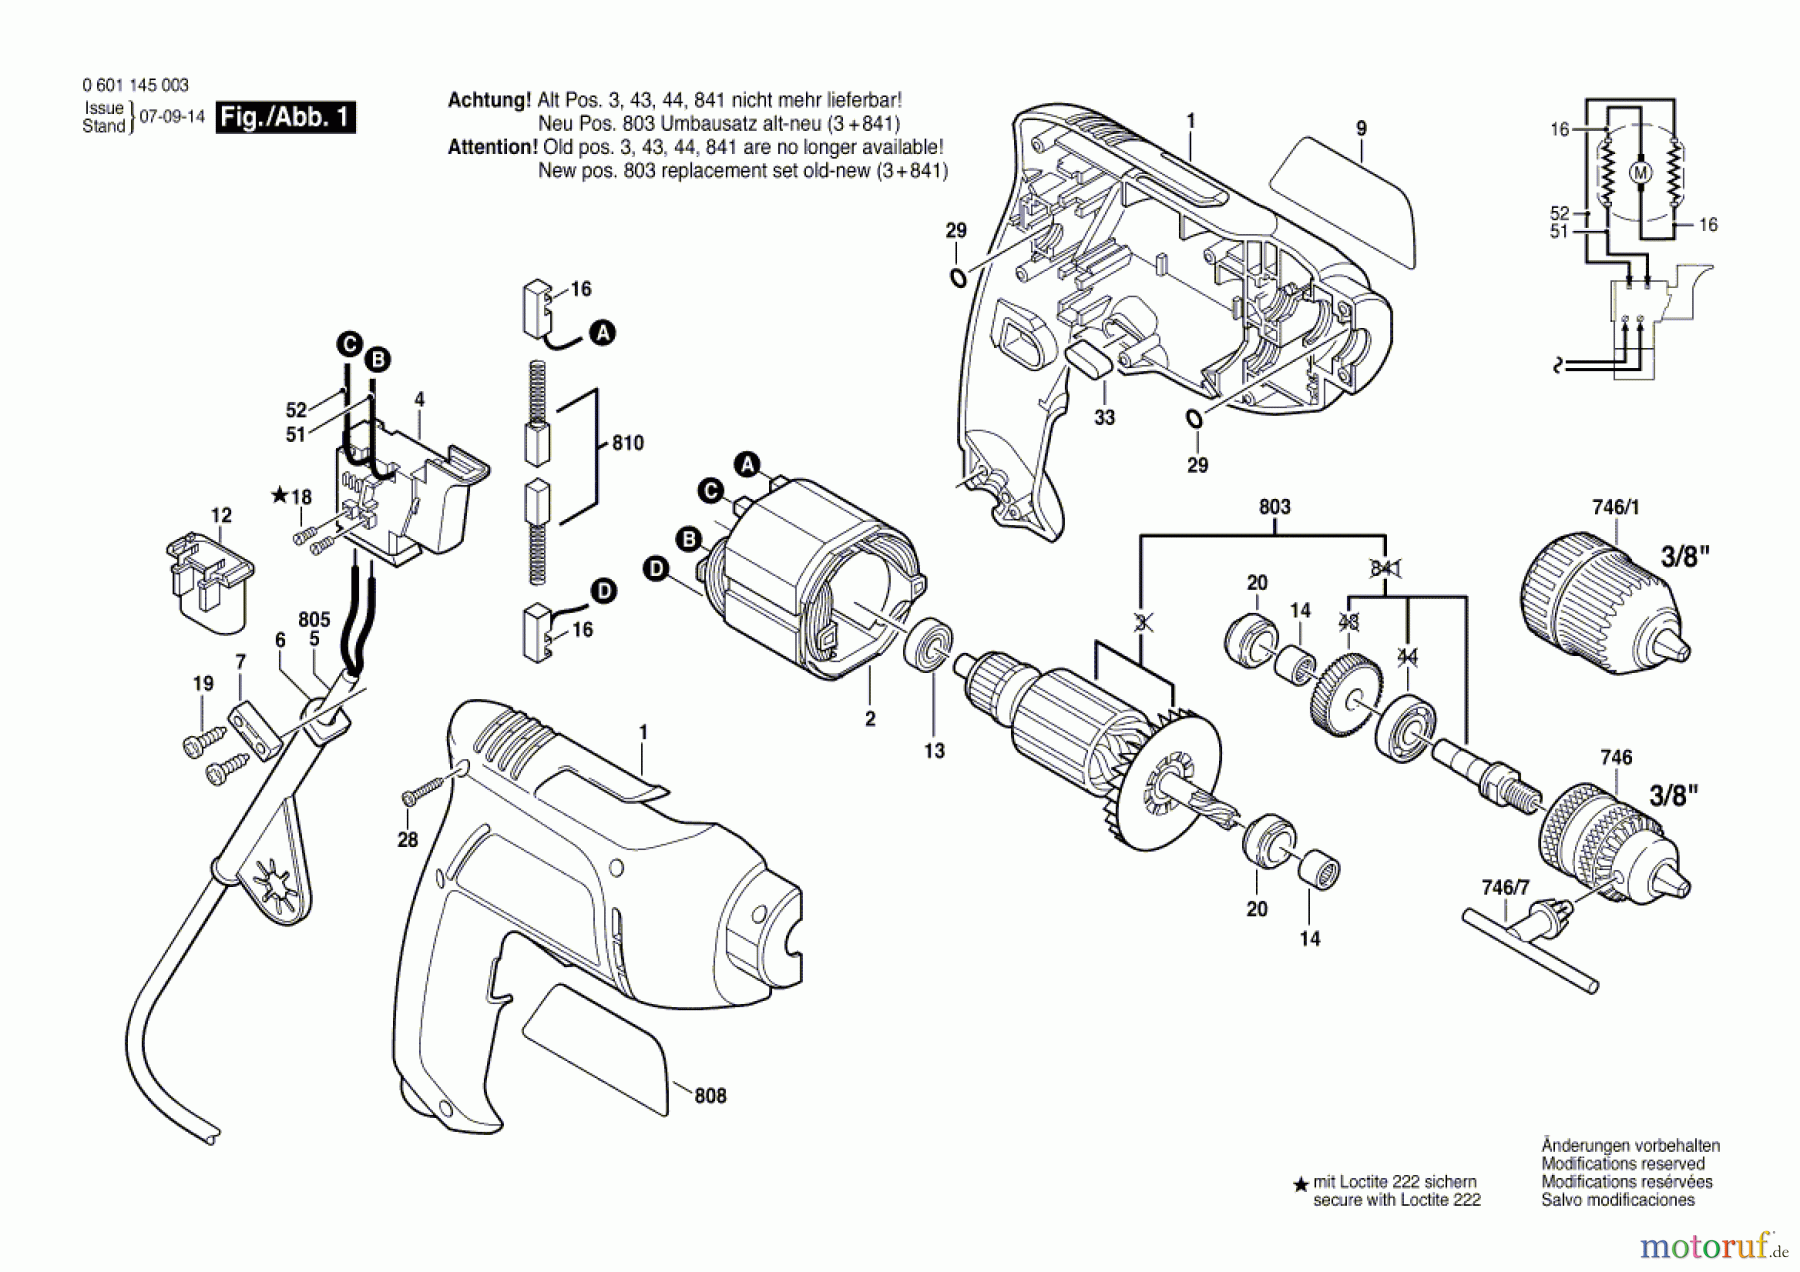  Bosch Werkzeug Bohrmaschine GBM 6 Seite 1